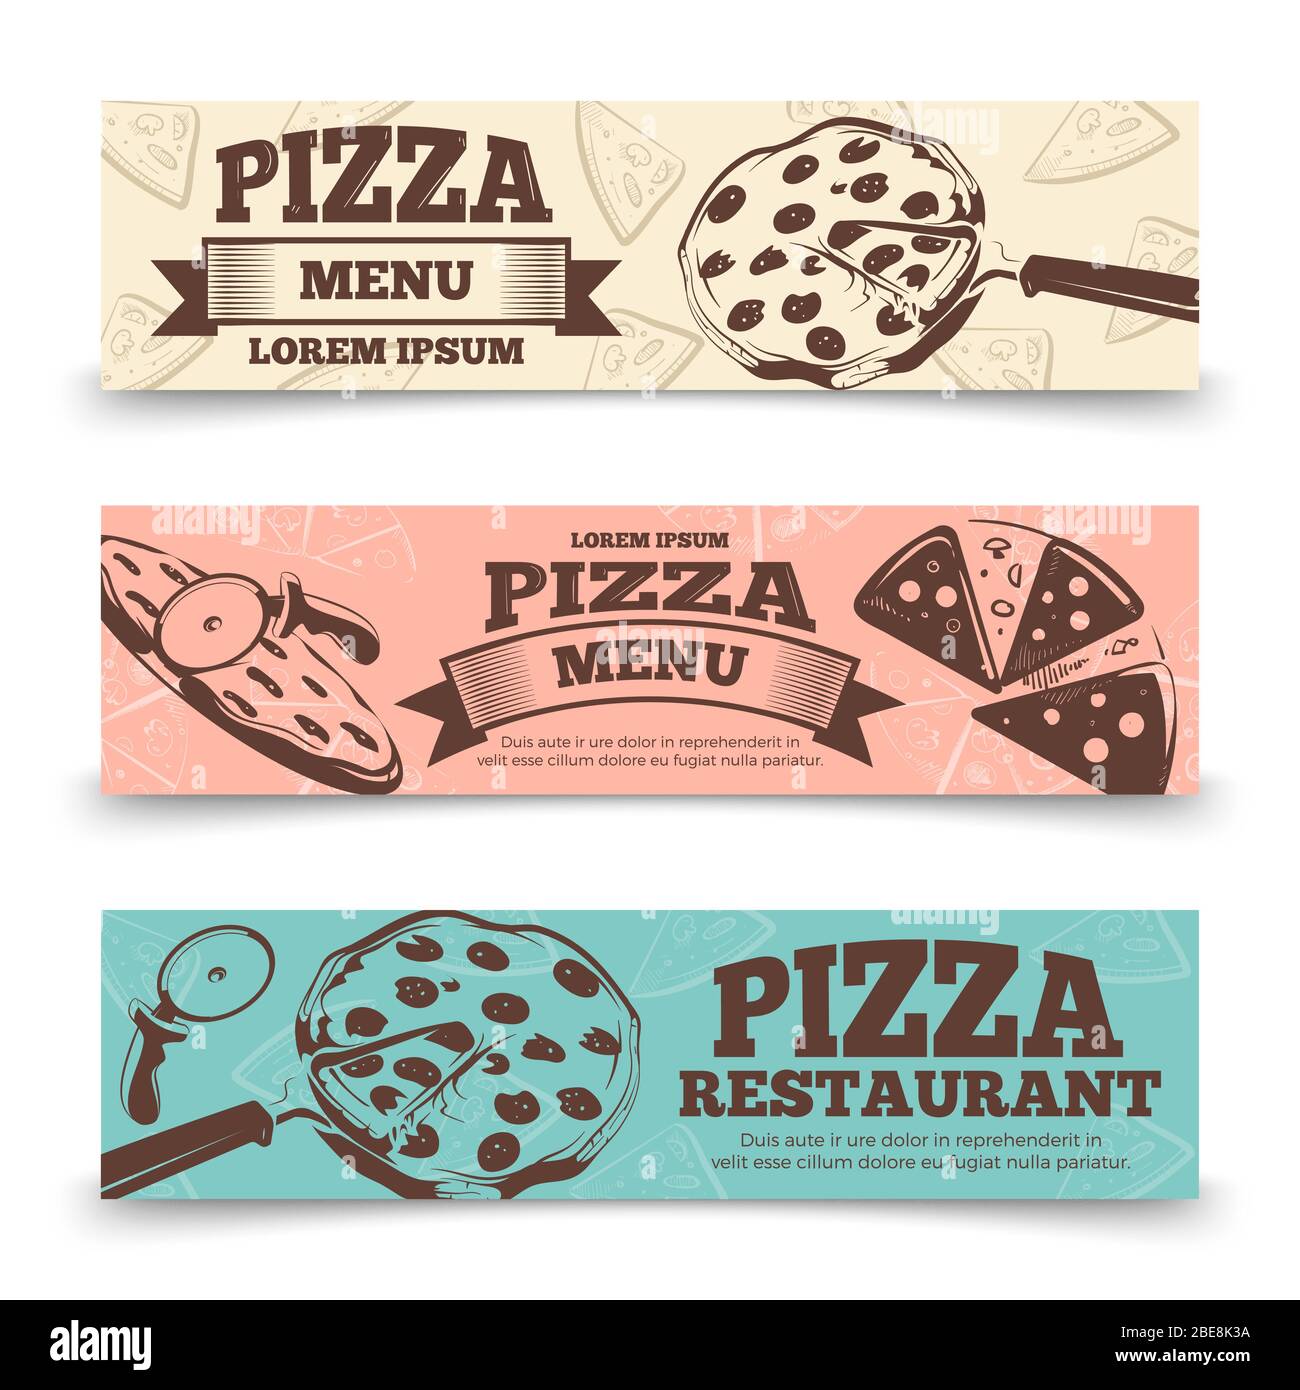 Modello banner menu pizza - banner vintage food. Poster del ristorante, illustrazione vettoriale Illustrazione Vettoriale